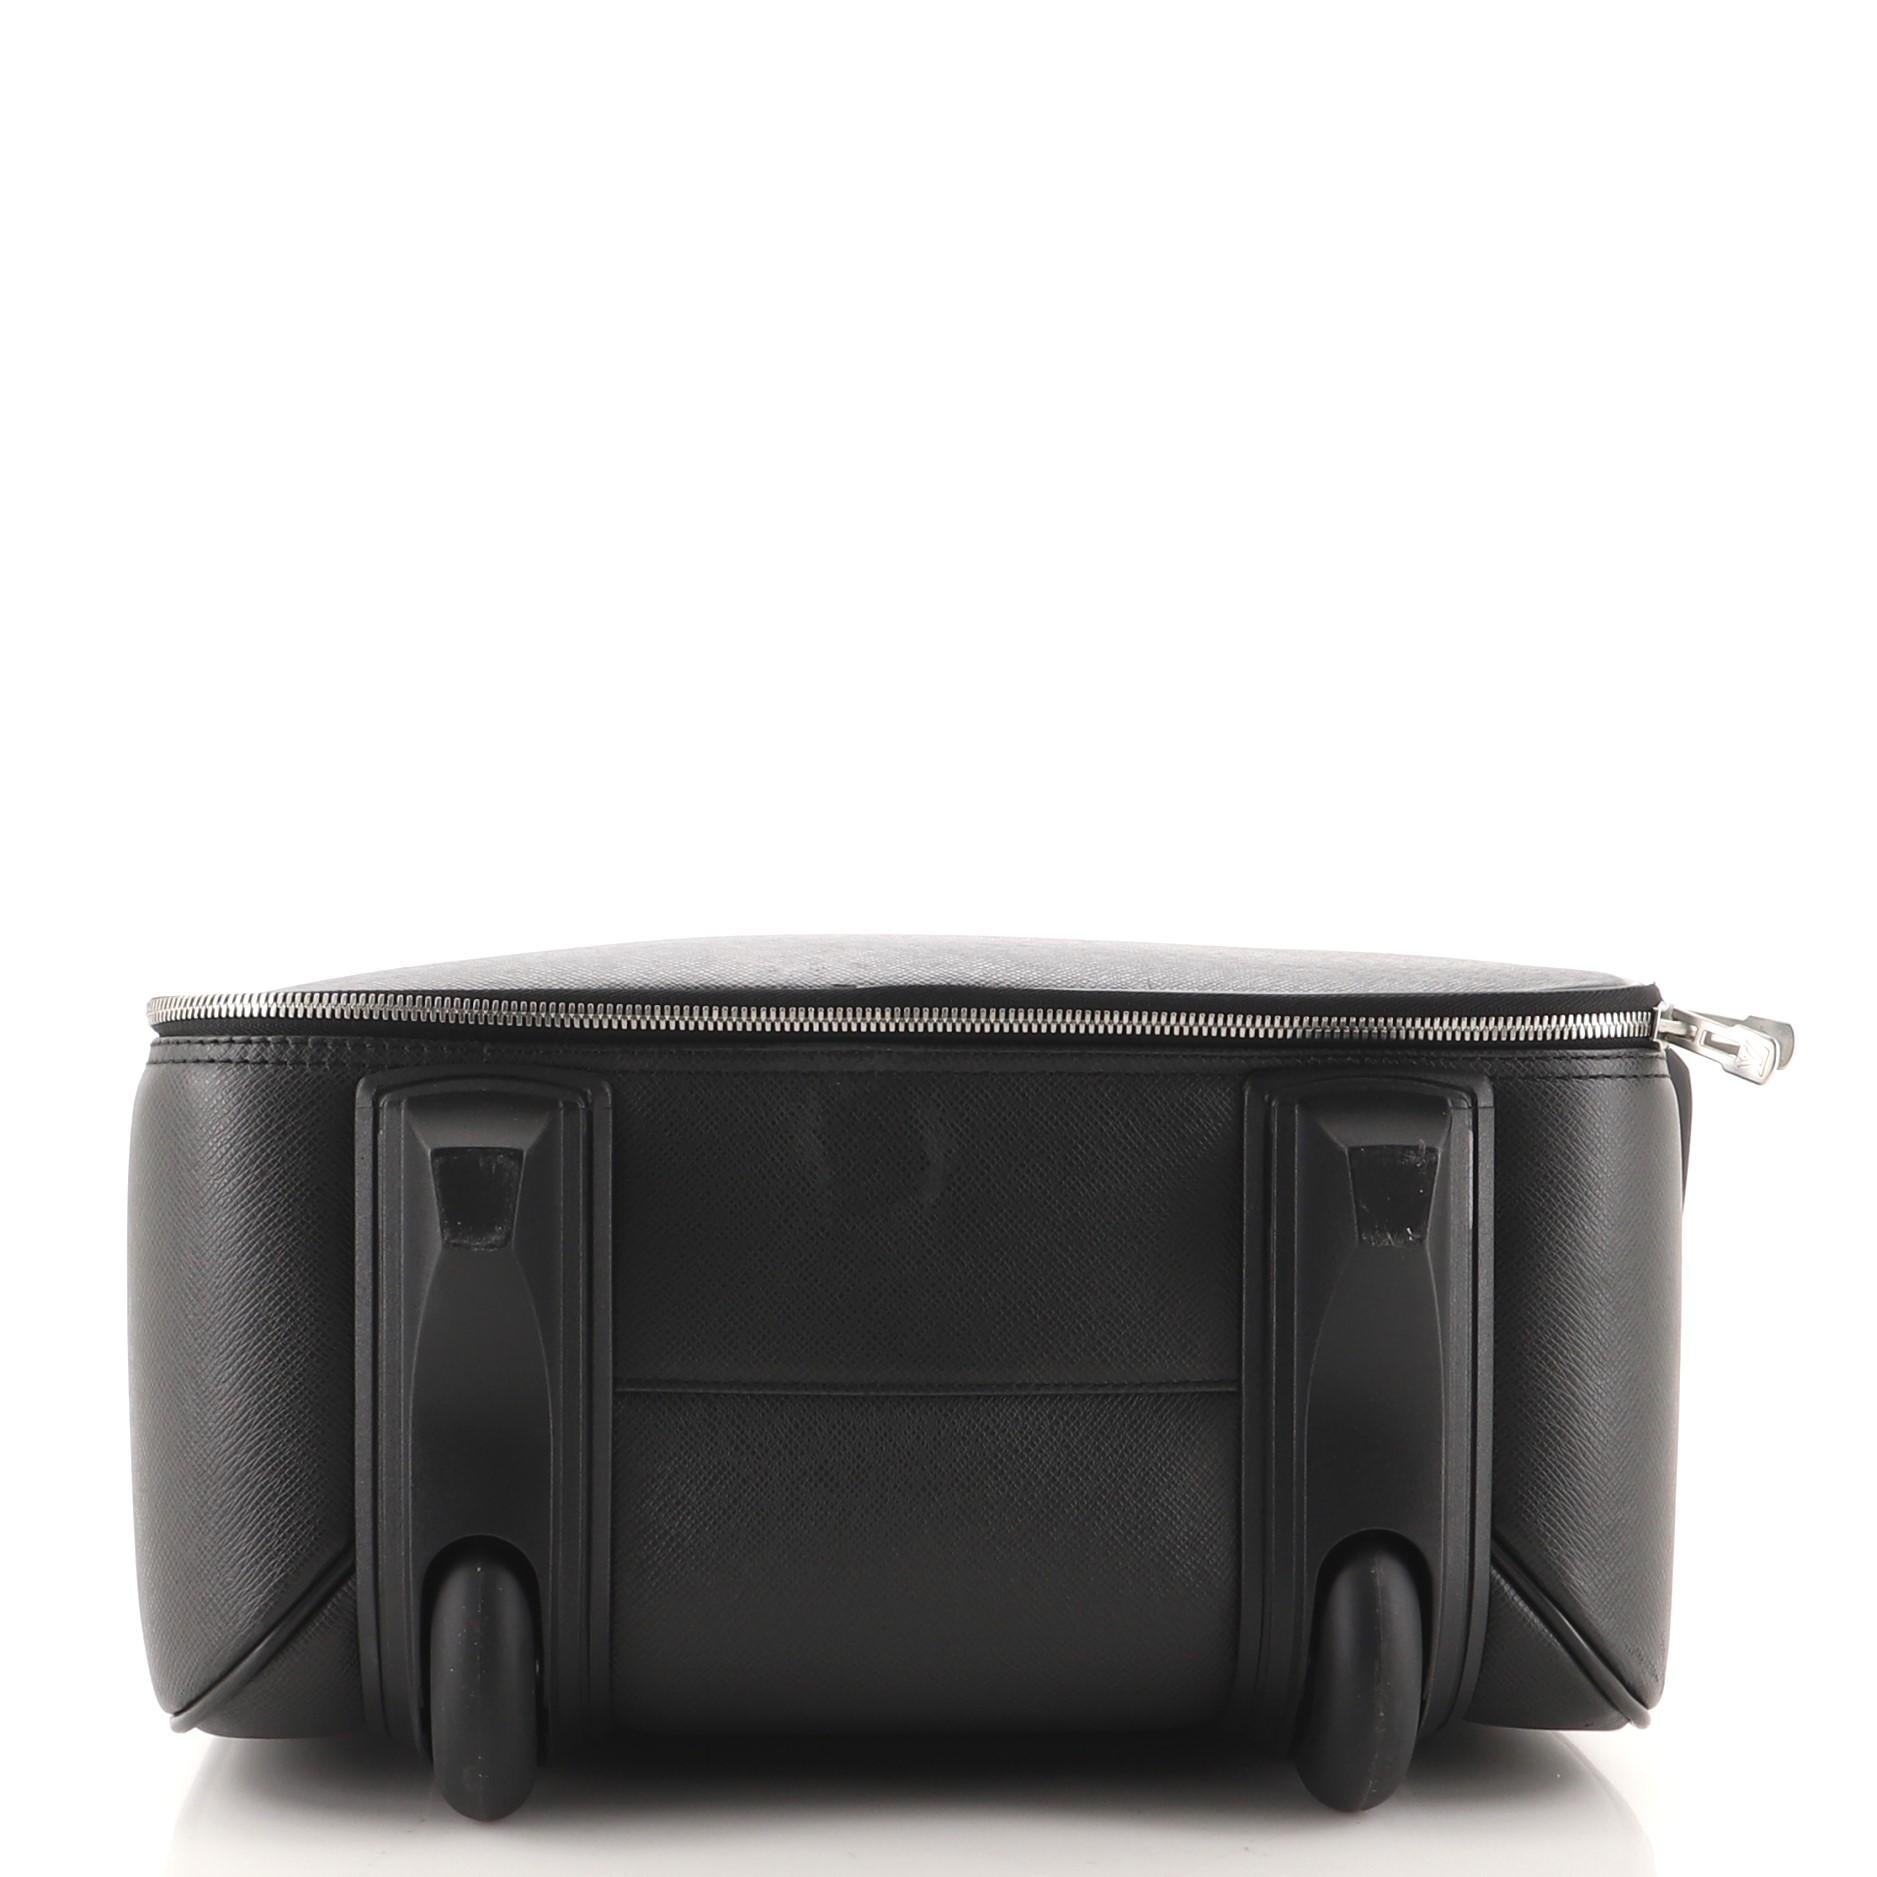 Black Louis Vuitton Pegase Luggage Taiga Leather 55